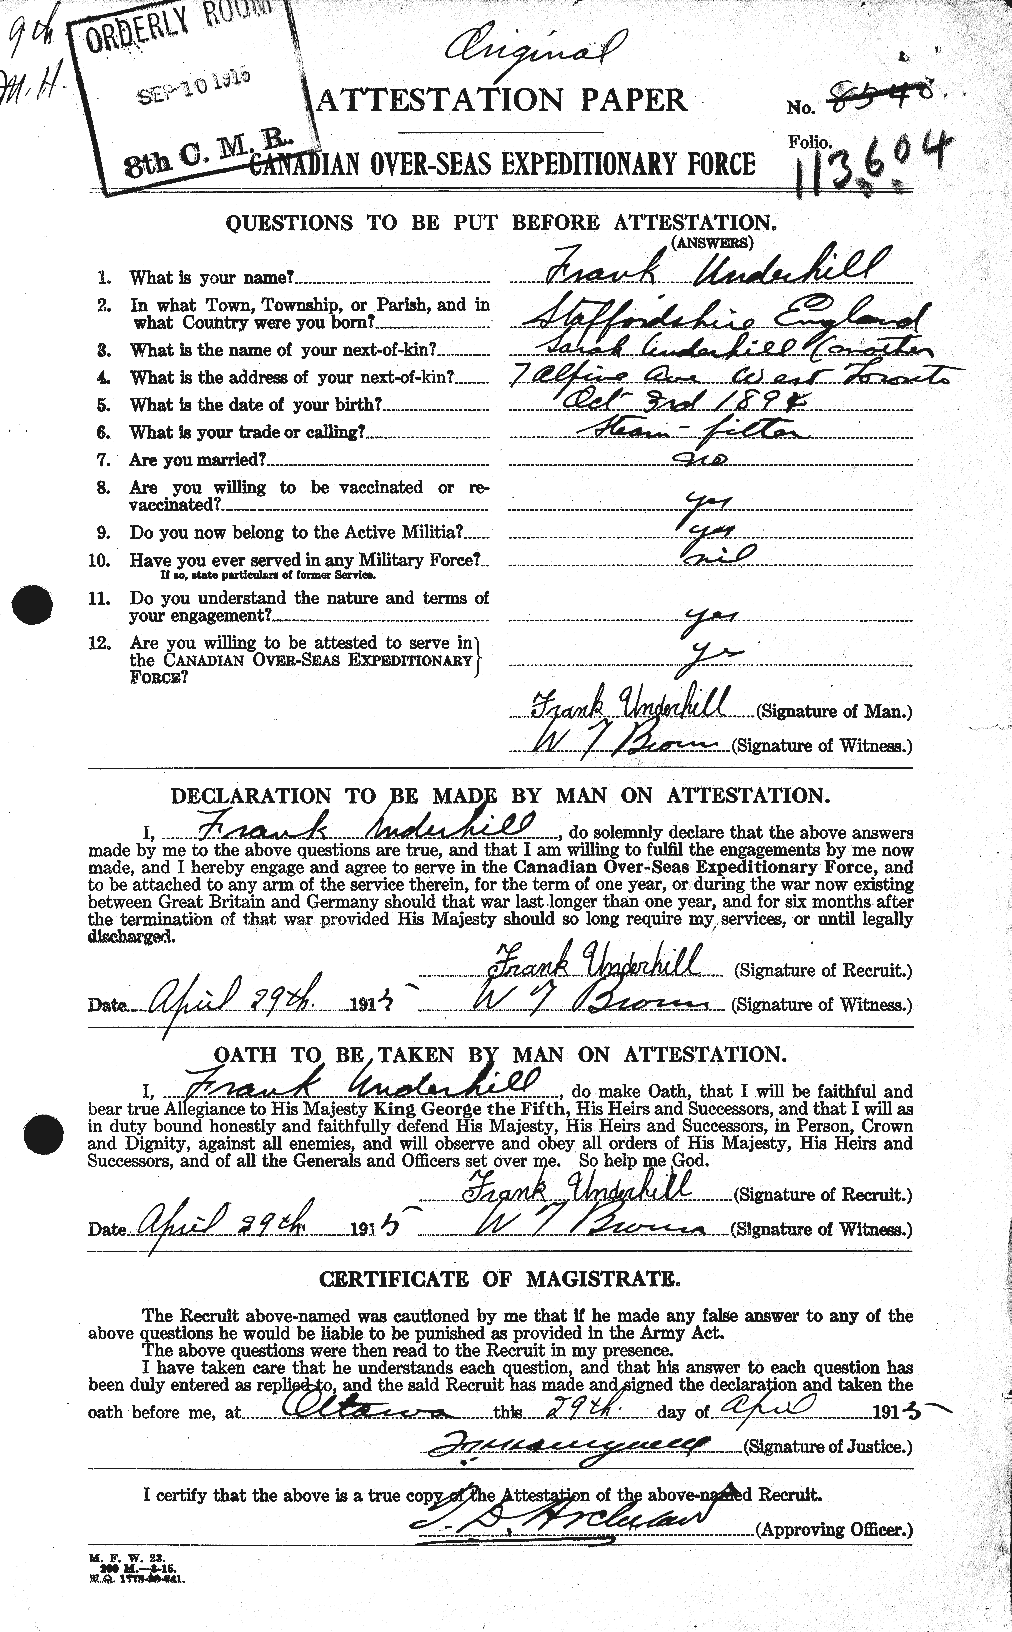 Dossiers du Personnel de la Première Guerre mondiale - CEC 647082a